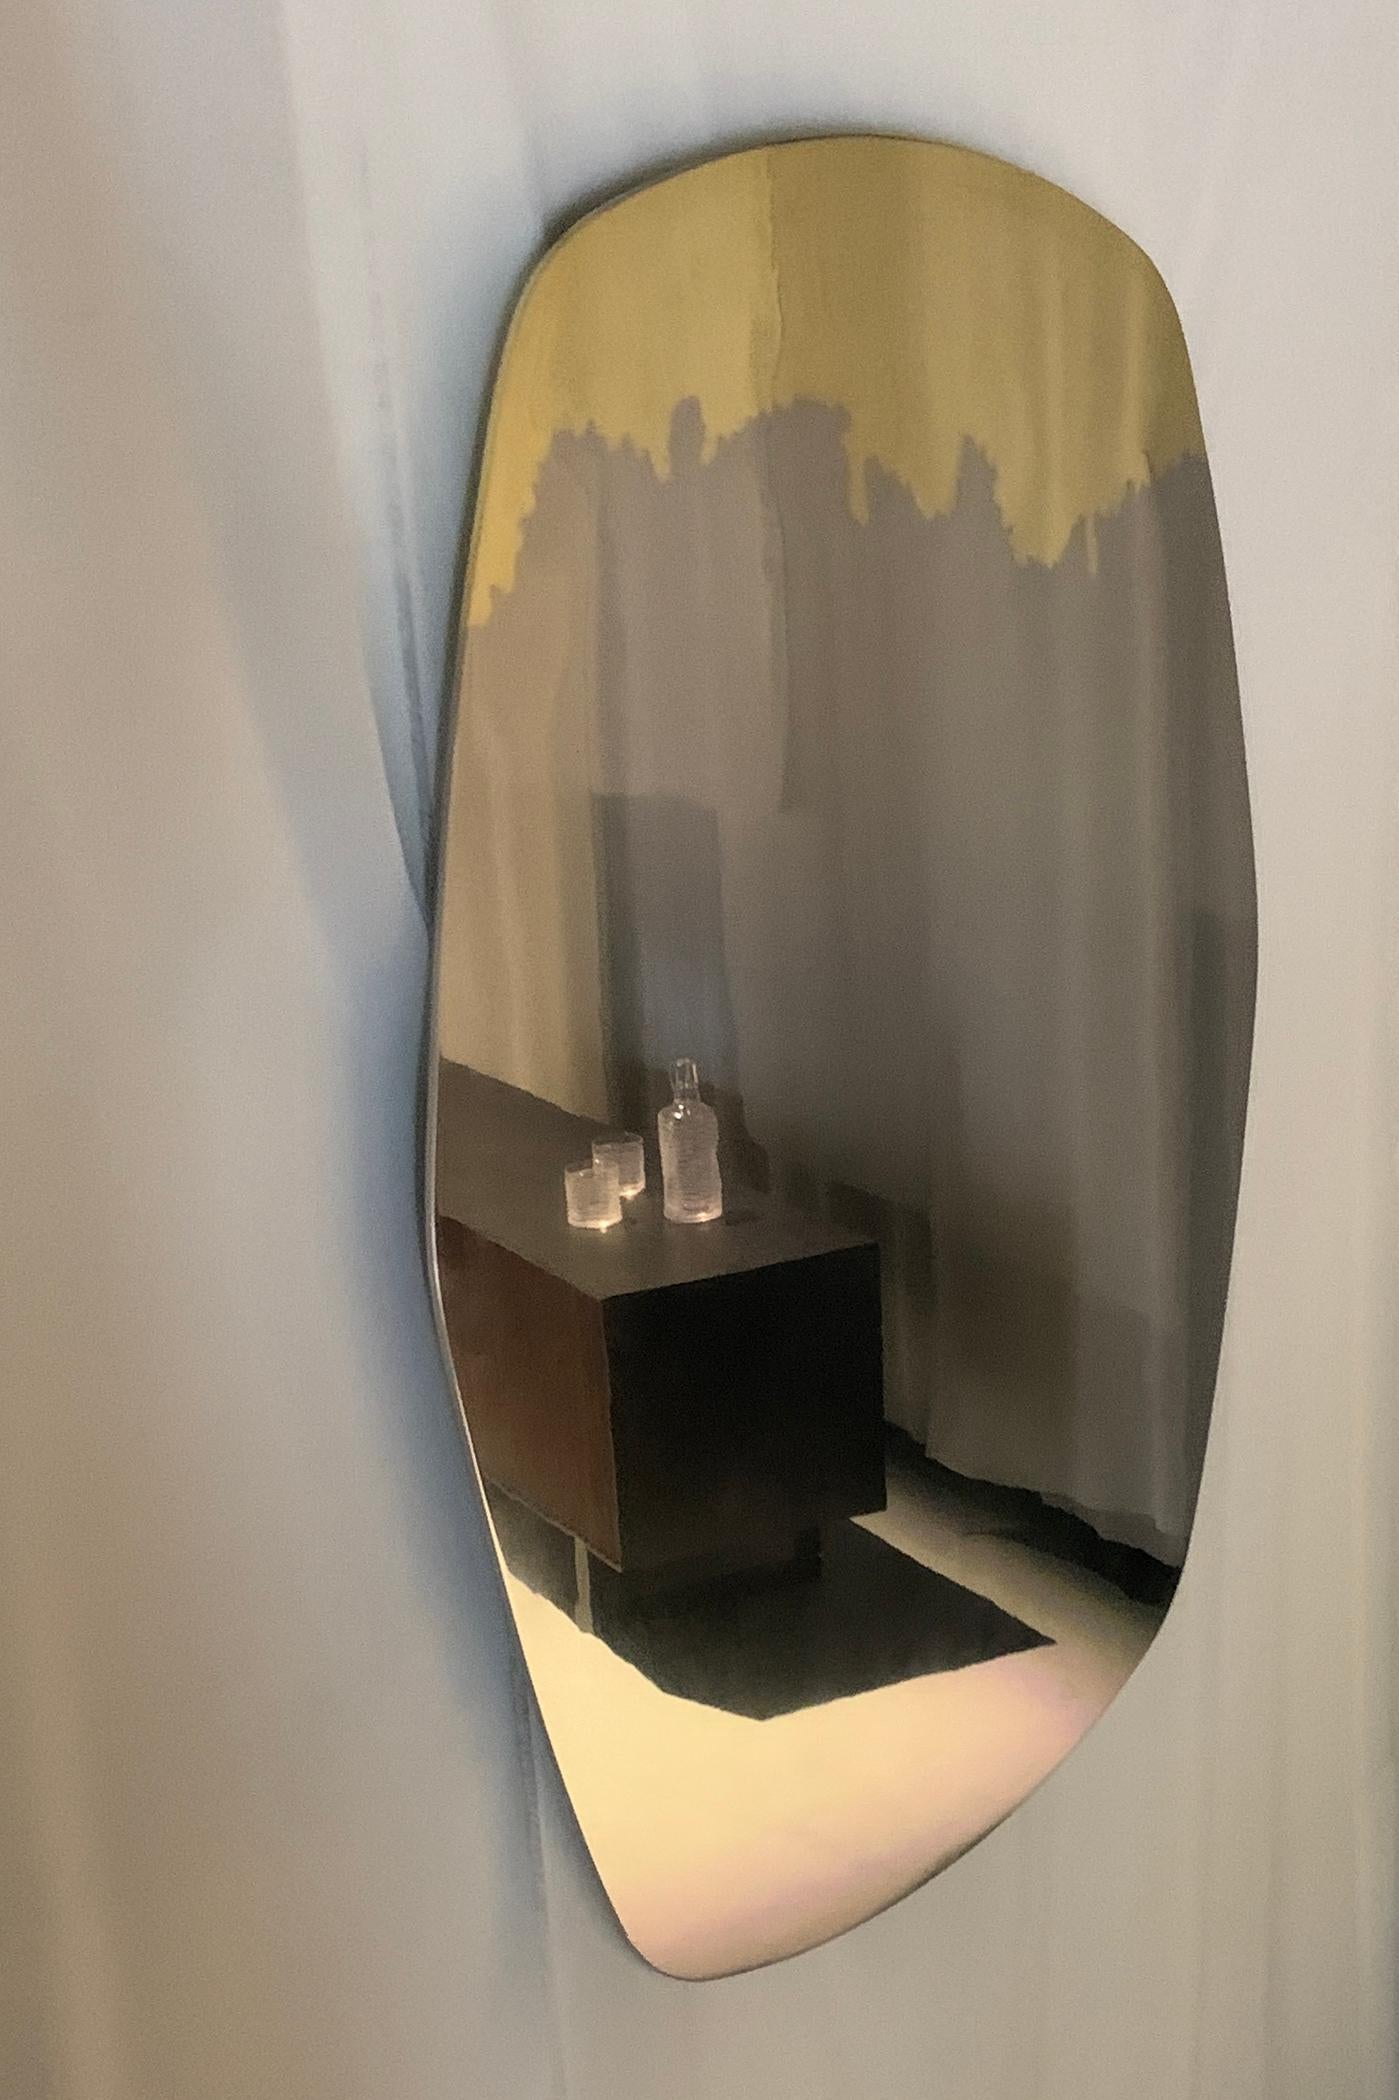 Nous avons lancé un nouveau miroir en acier inoxydable poli et en laiton pour compléter notre collection Transition, qui connaît un grand succès. Il présente une finition unique et artistique en laiton et acier inoxydable.

Avec ses dimensions de